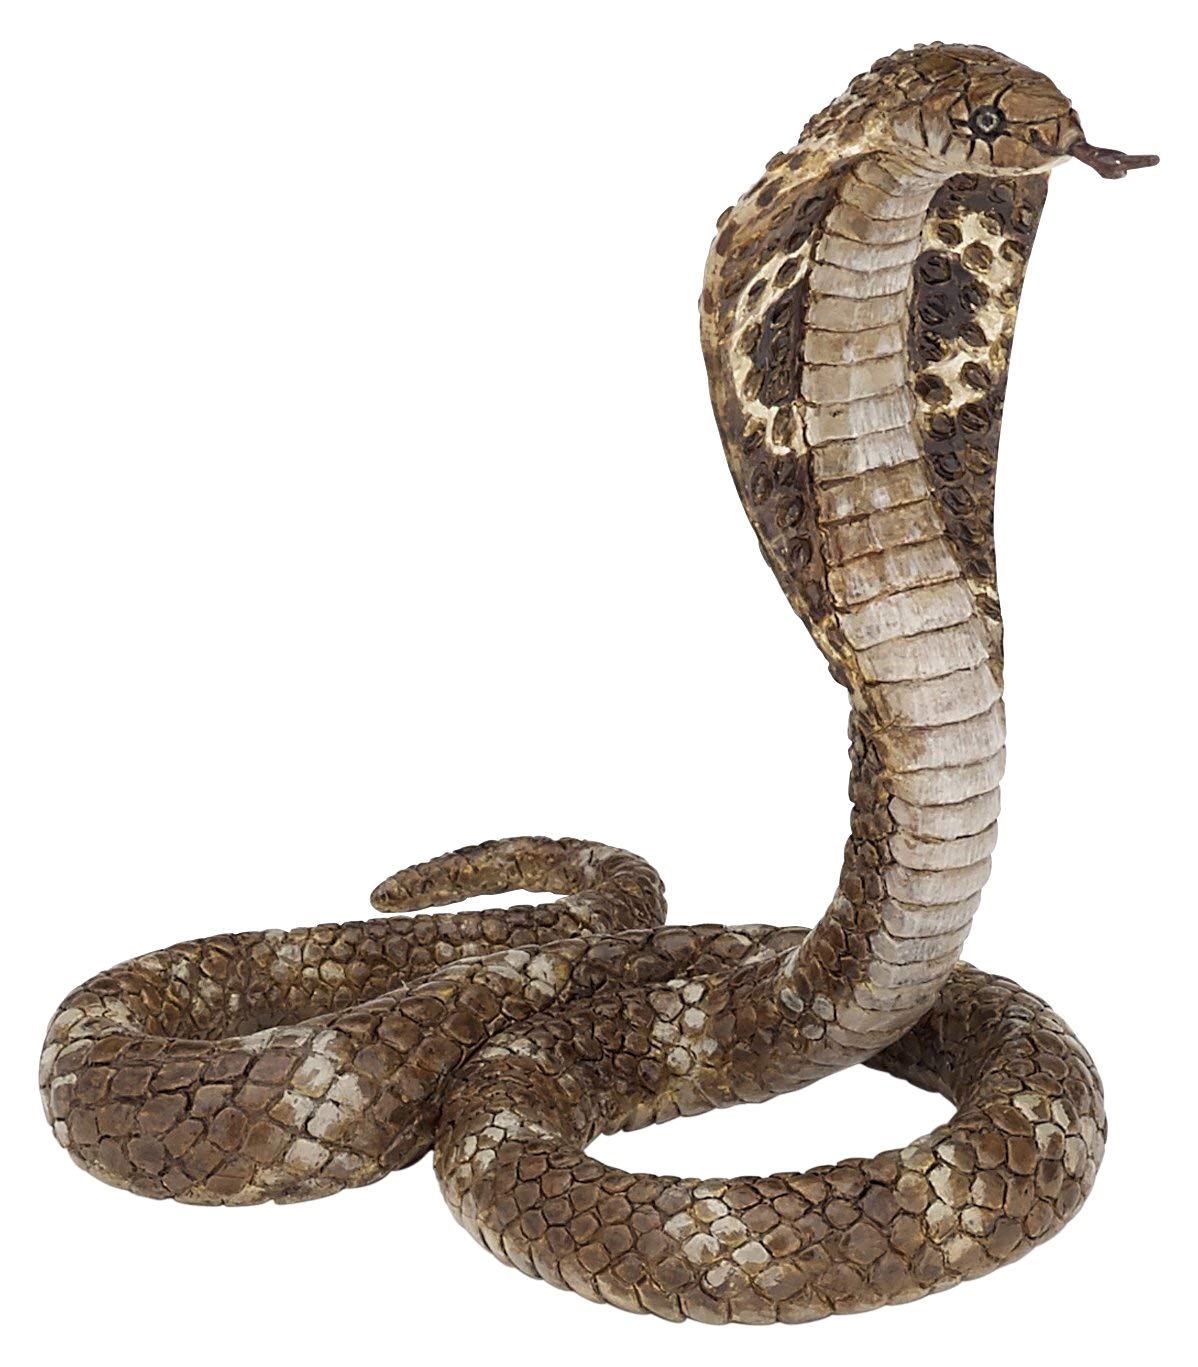 King Cobra Snake Transparent PNG